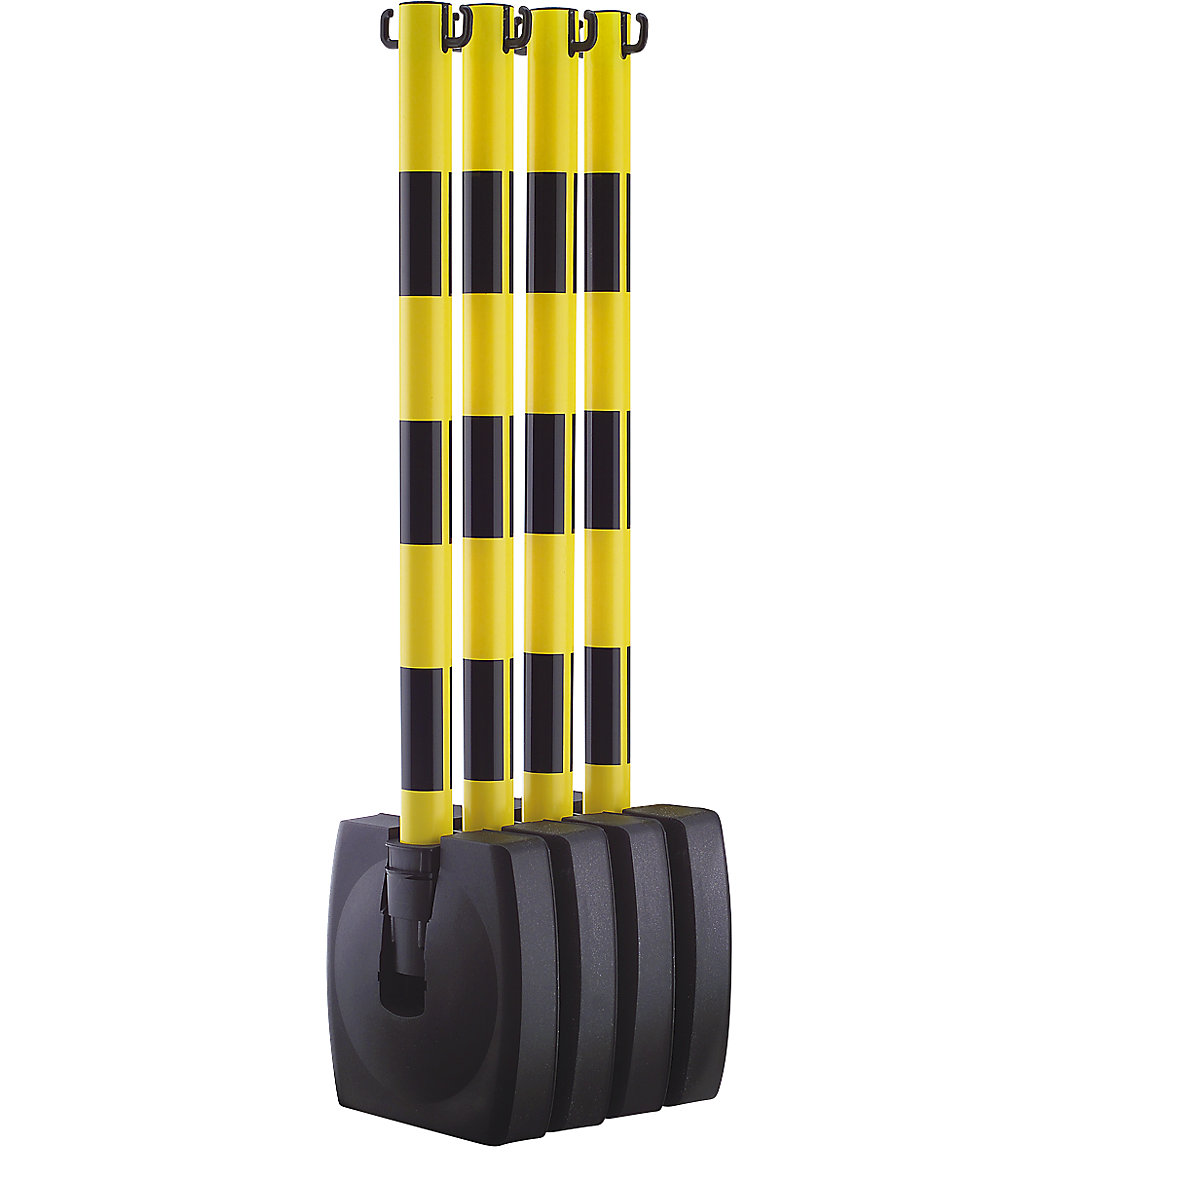 Ketten-Warnständer-Set, klappbar, Pfostenhöhe 900 mm, gelb / schwarz